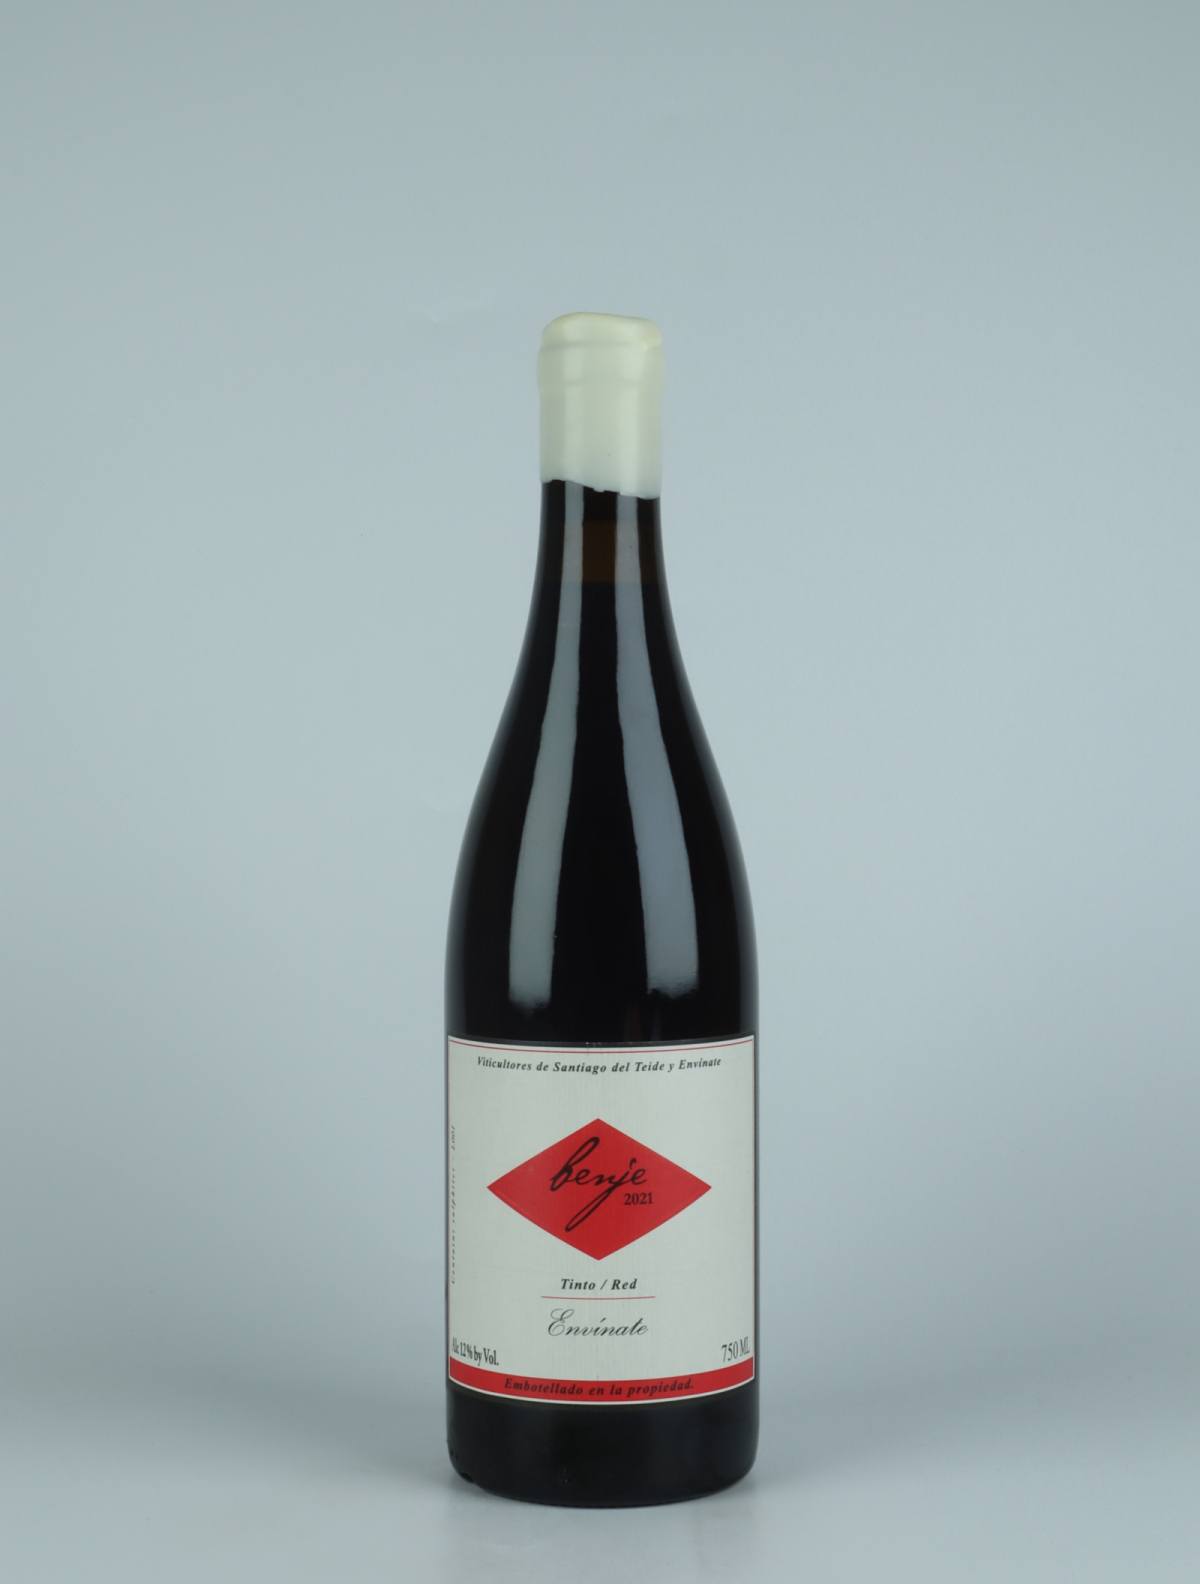 En flaske 2021 Benje Tinto - Tenerife Rødvin fra Envínate, Tenerife i Spanien